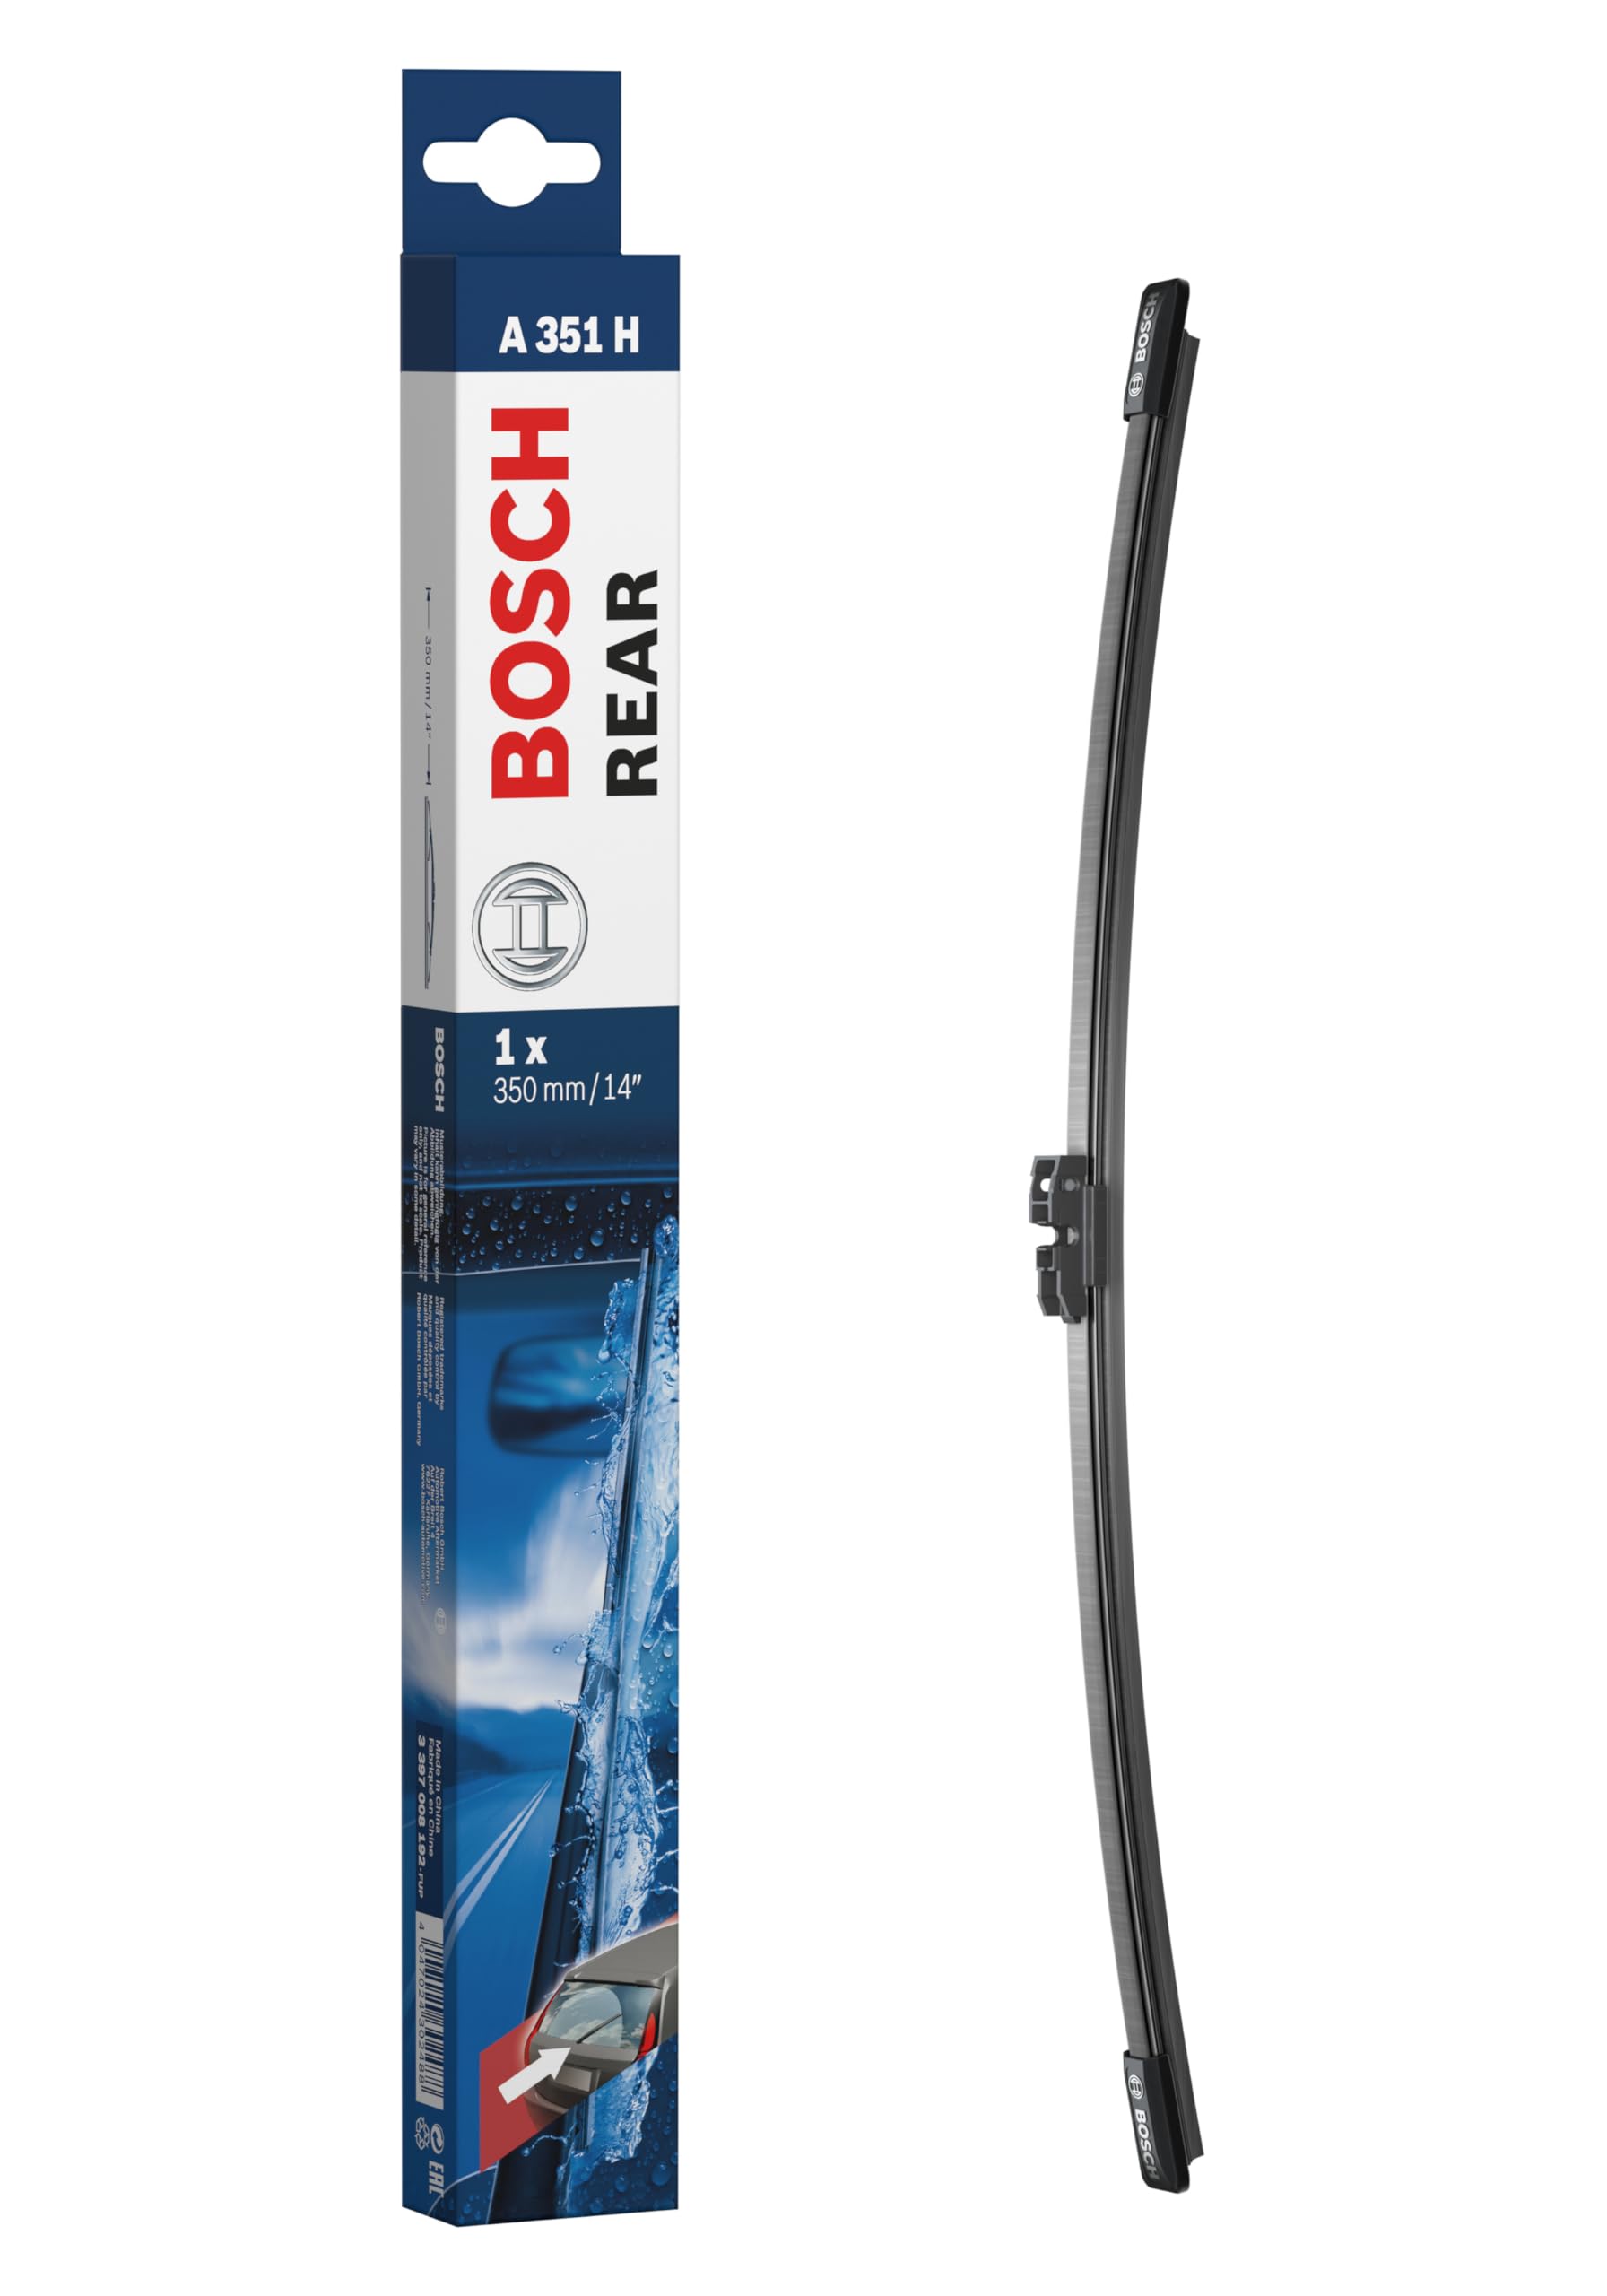 Bosch Scheibenwischer Rear A351H, Länge: 350mm – Scheibenwischer für Heckscheibe von Bosch Automotive